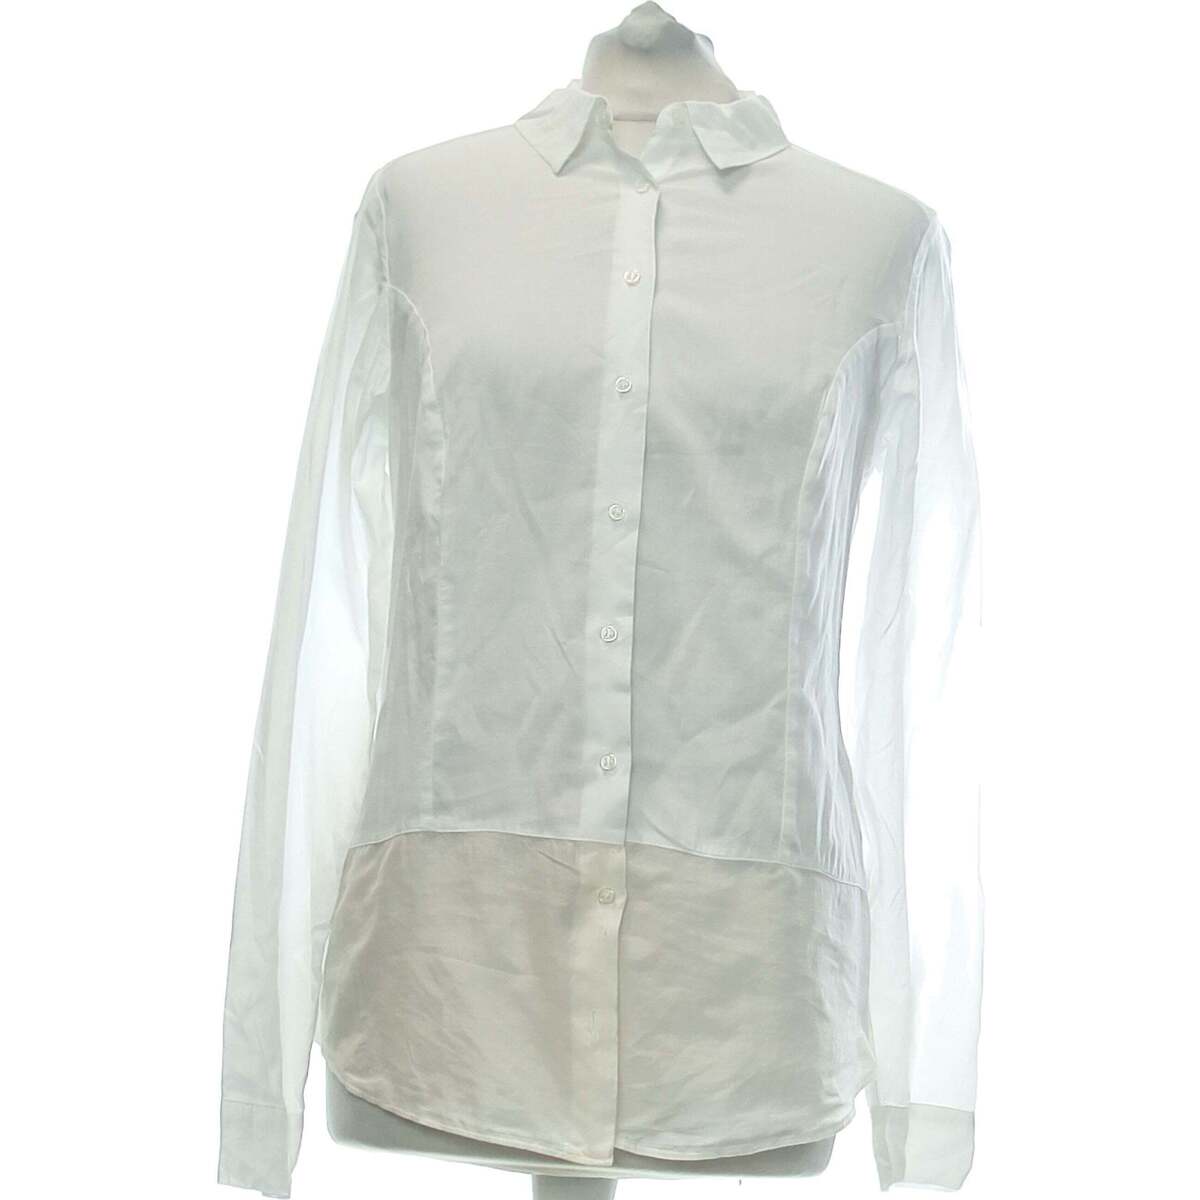 Vêtements Femme Chemises / Chemisiers Miss Captain chemise  36 - T1 - S Blanc Blanc